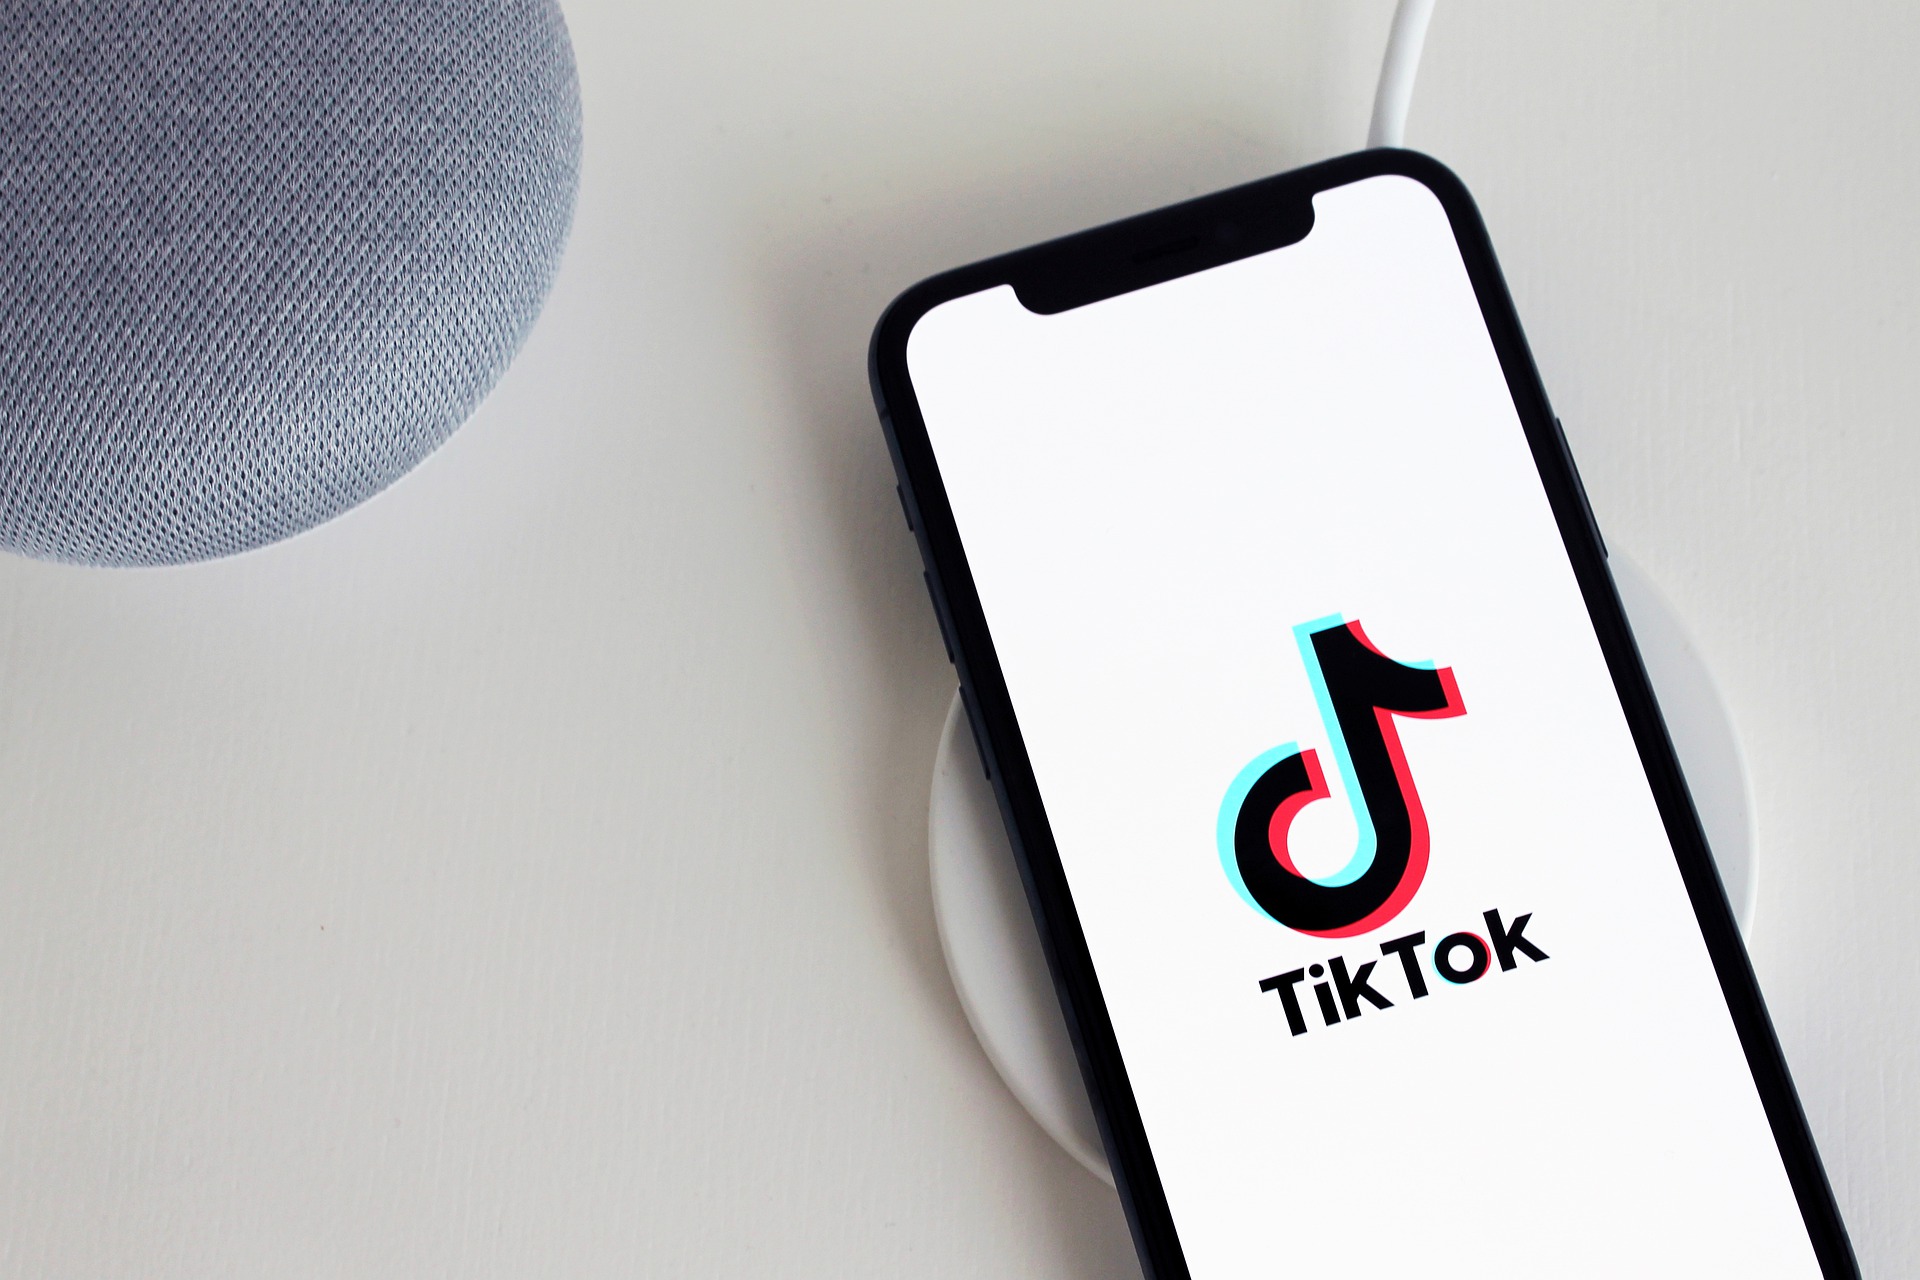 “了解并购买TikTok直播账号的信息指南”